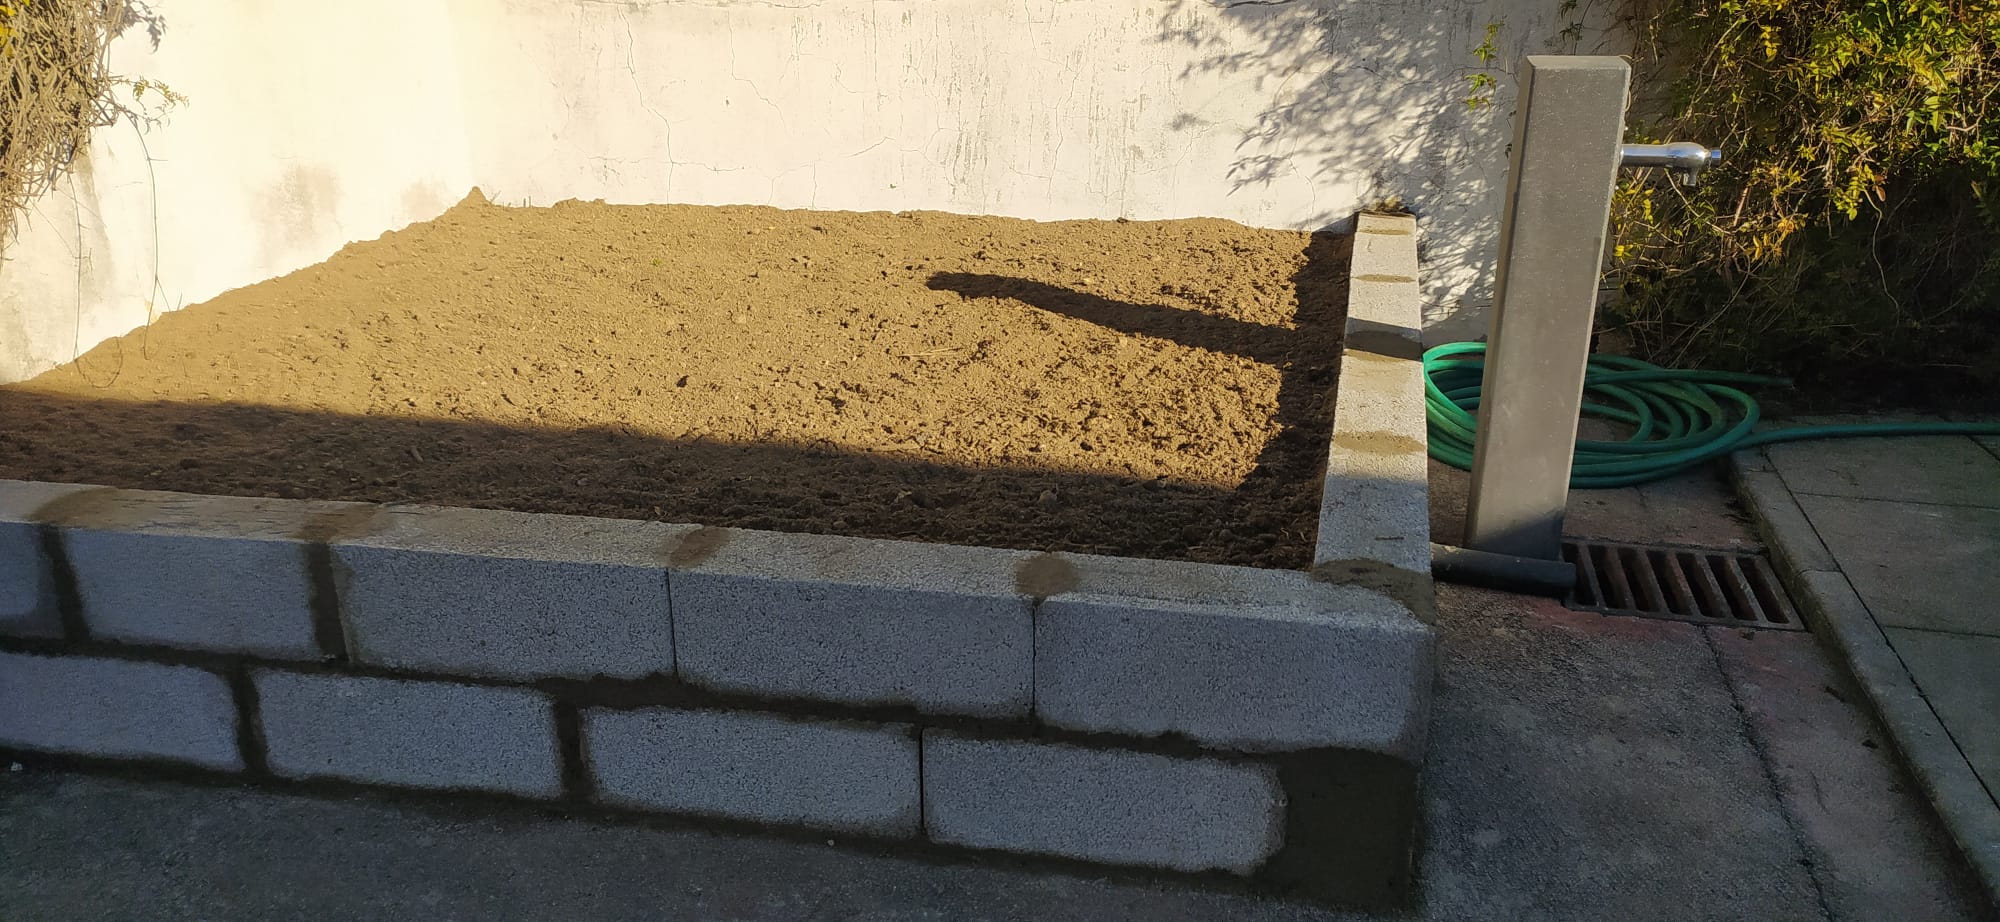 Preparação do espaço para a futura horta -construção dos muros em blocos